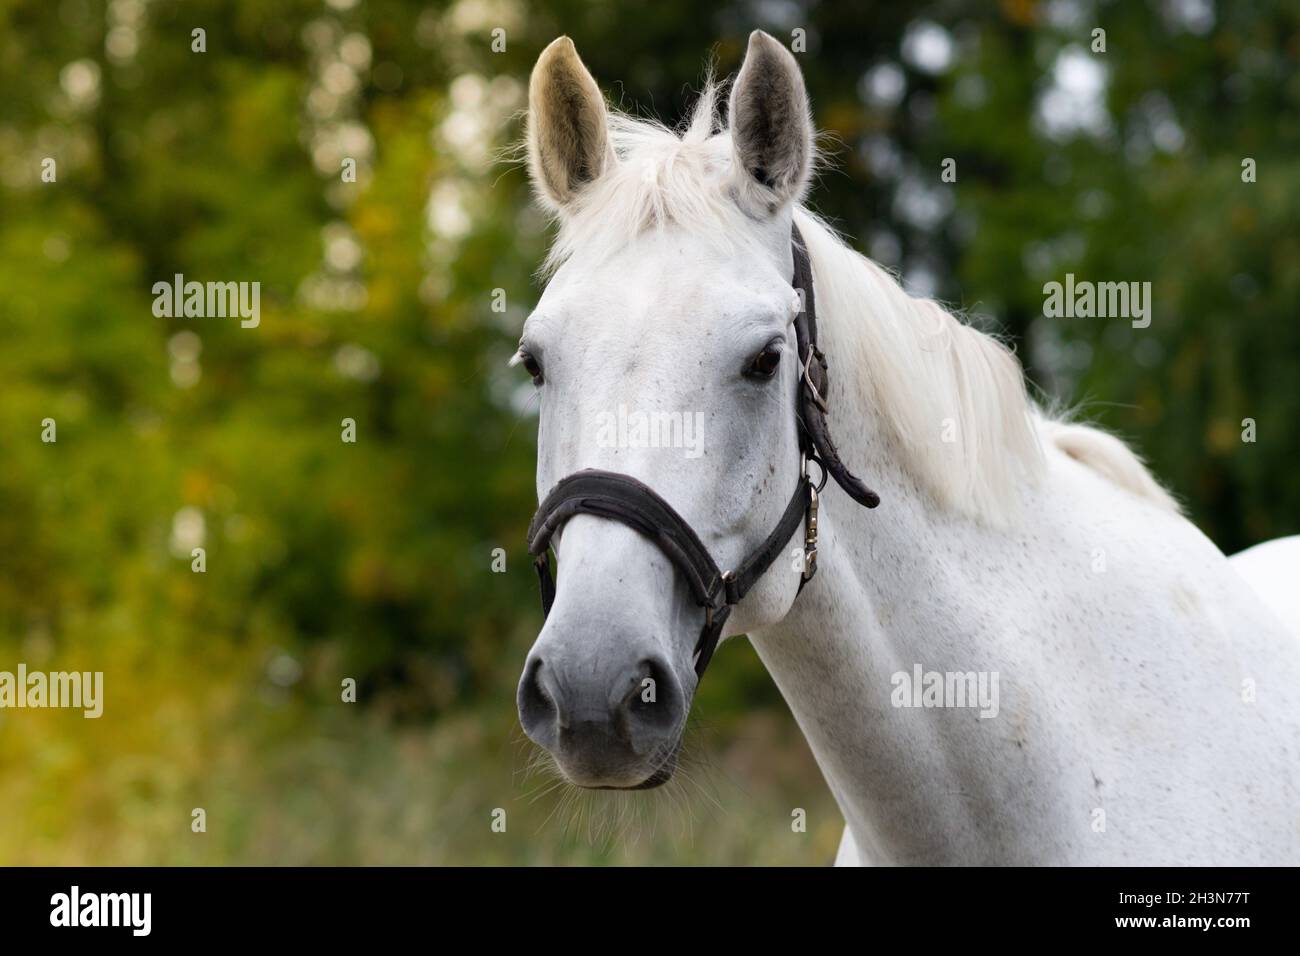 Weißes Pferd Porträt auf dem grünen Wald Hintergrund. Pferdeportrait Stockfoto